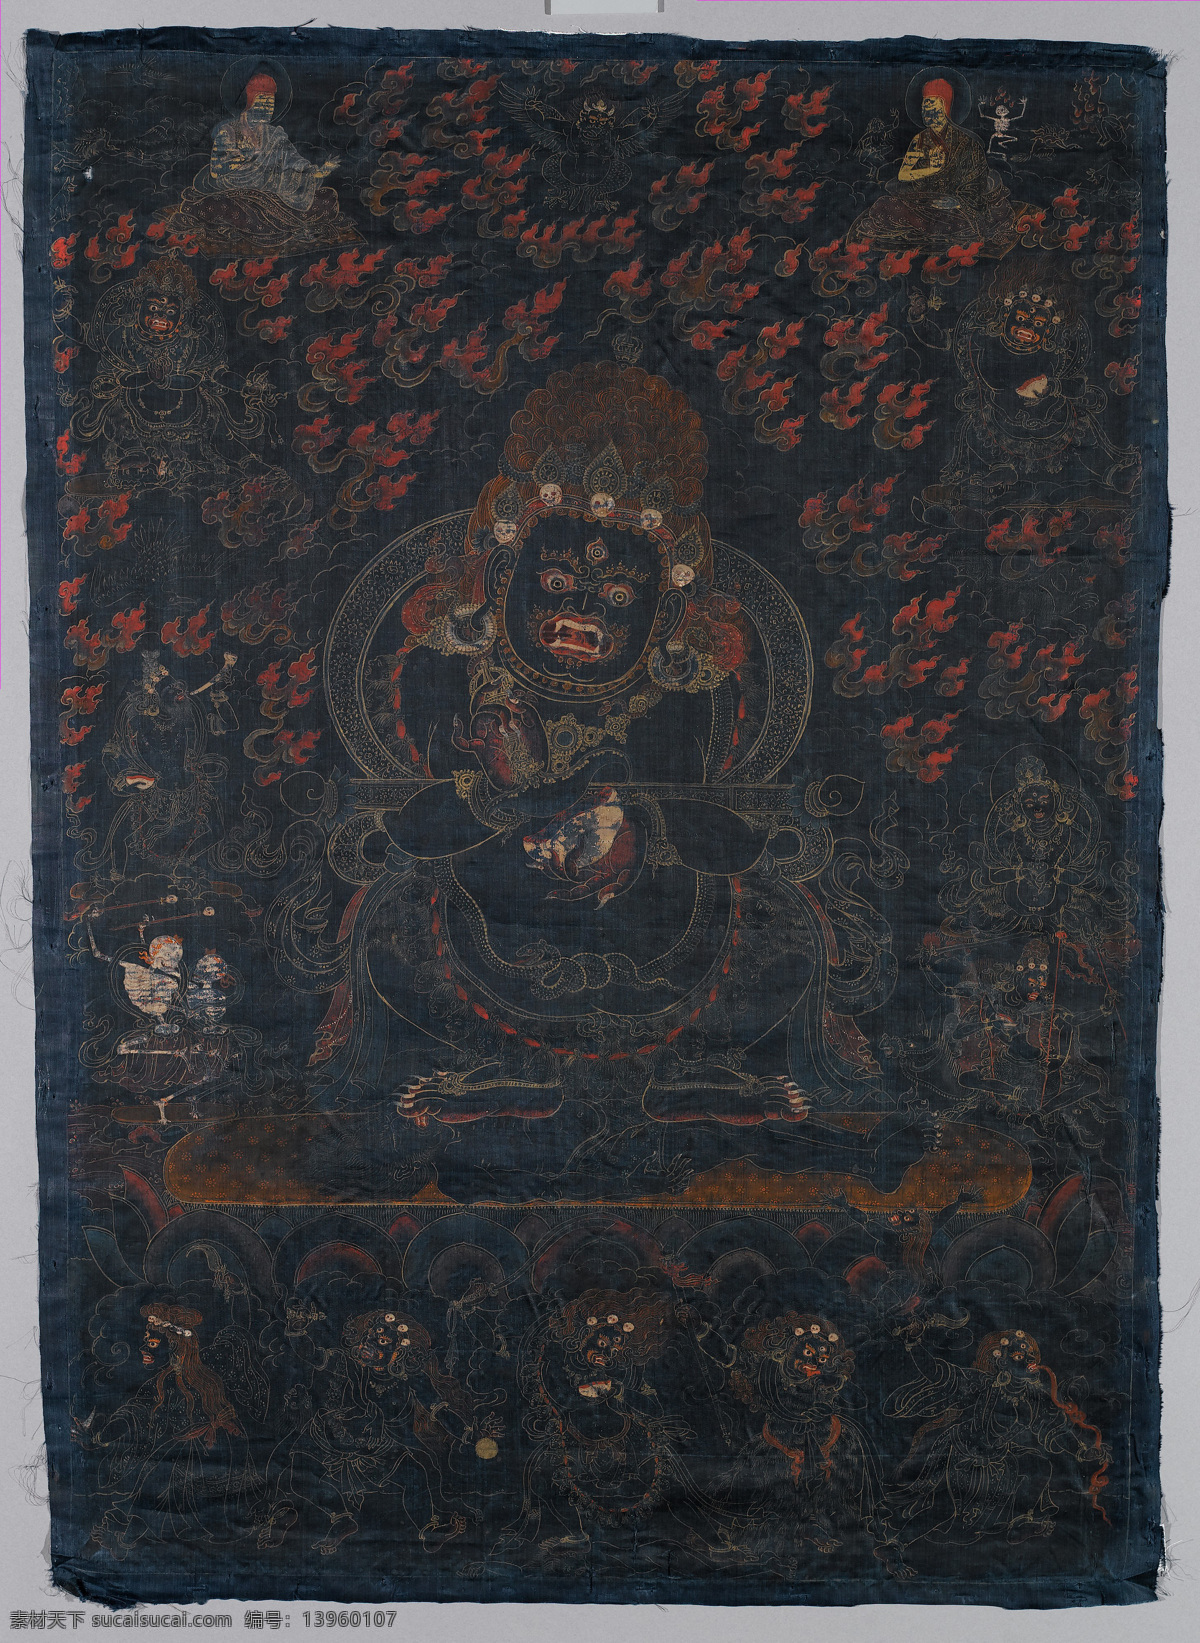 佛 佛教 文化艺术 西藏 宗教信仰 玛哈嘎拉 宝帐怙主 二臂大黑天 萨迦派 钺刀 骷髅碗 禅杖 密宗